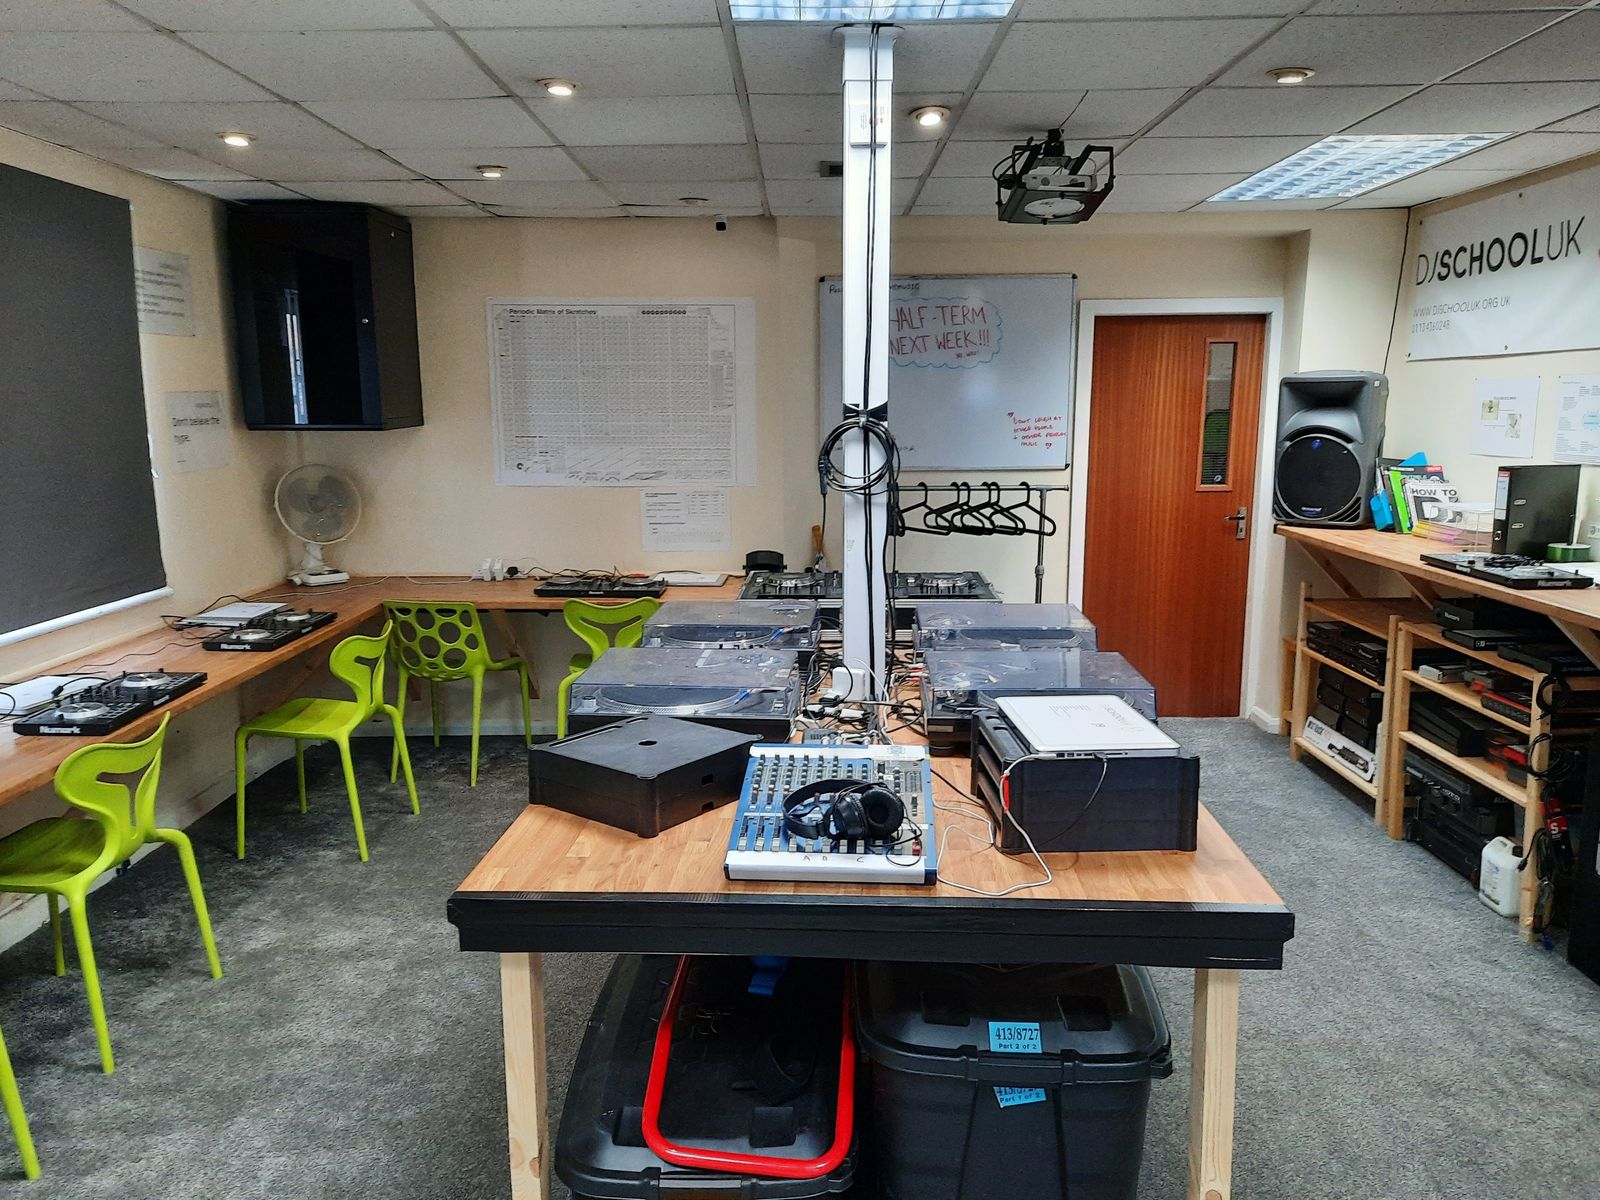 DJ School UK leases new premises